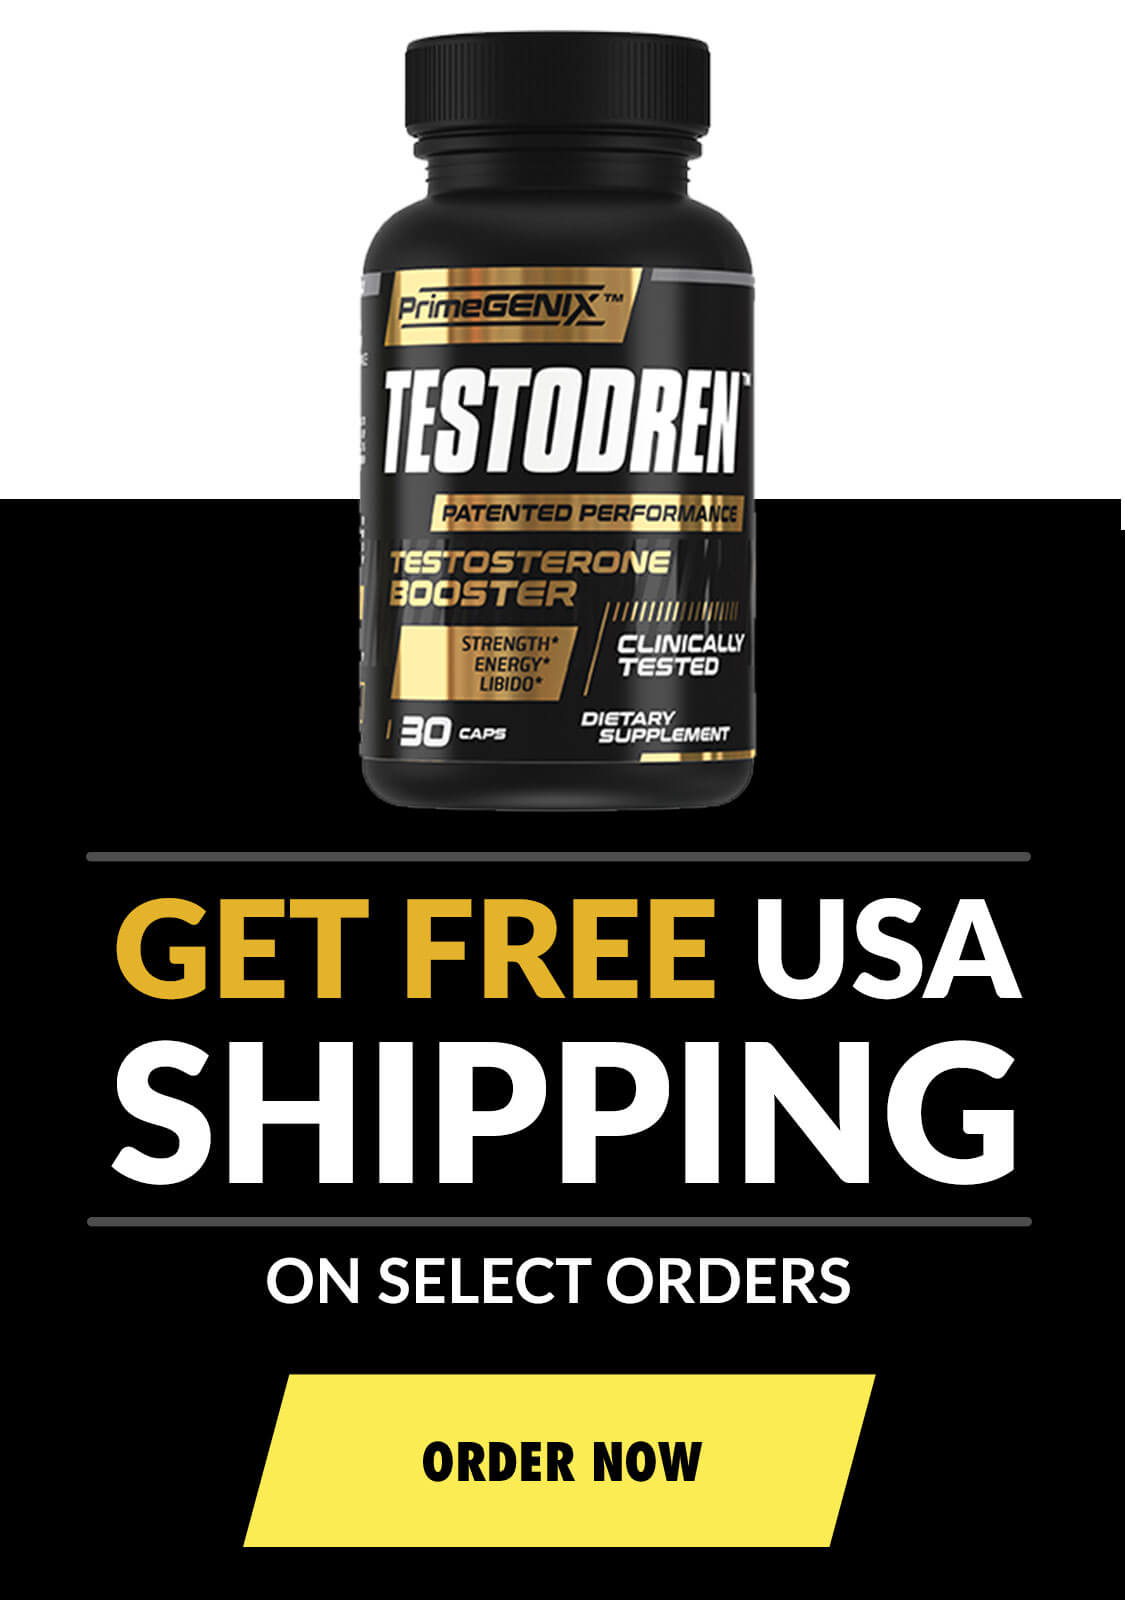 Get Free USA Shipping on Testodren